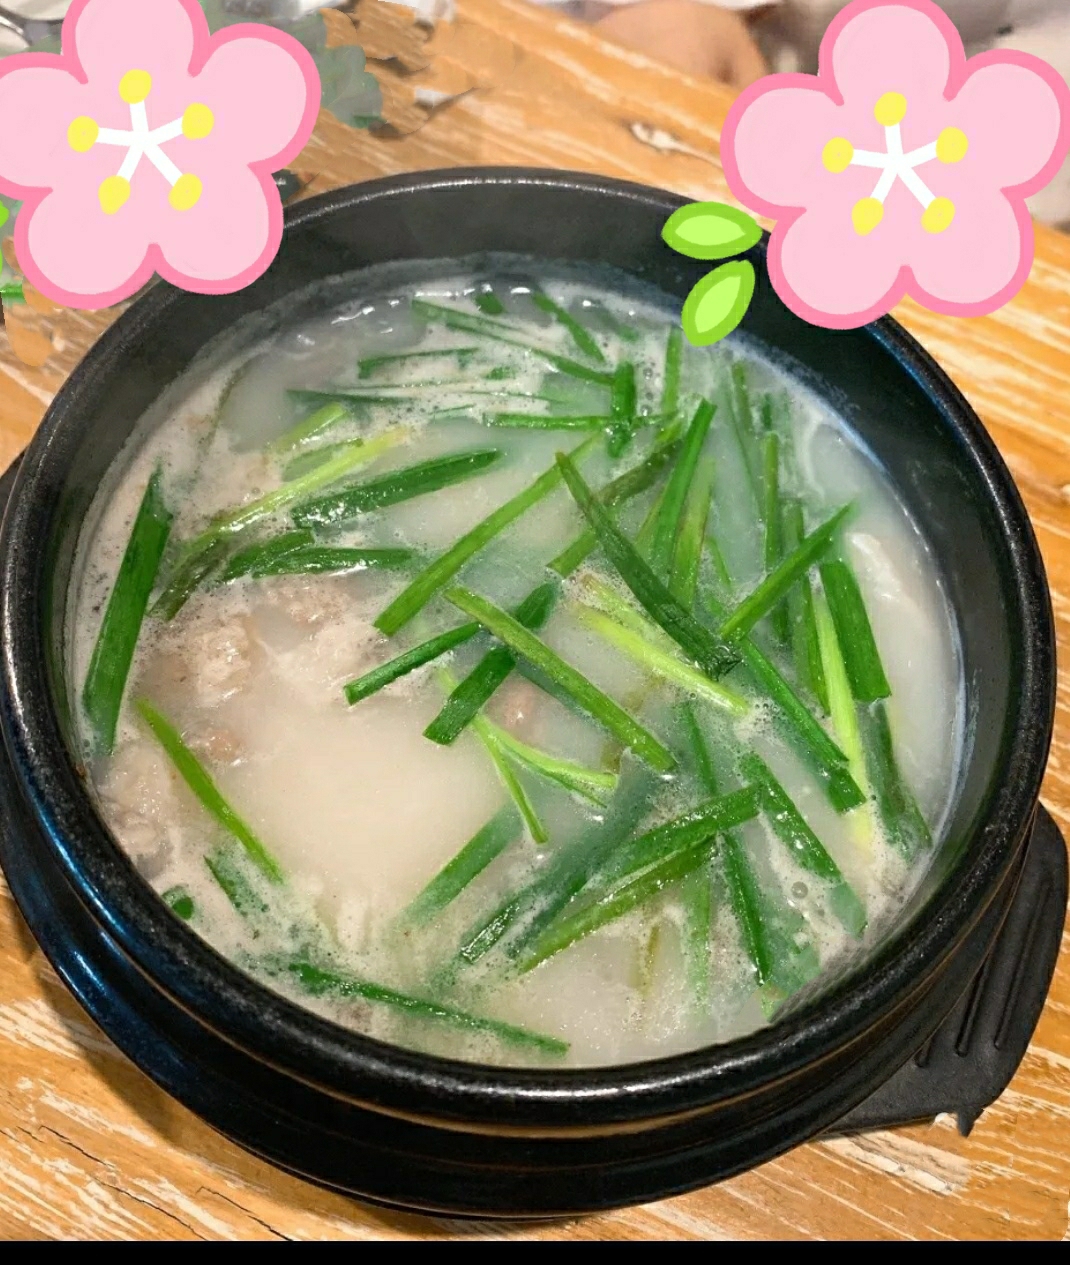 米肠汤饭-图库-五毛网